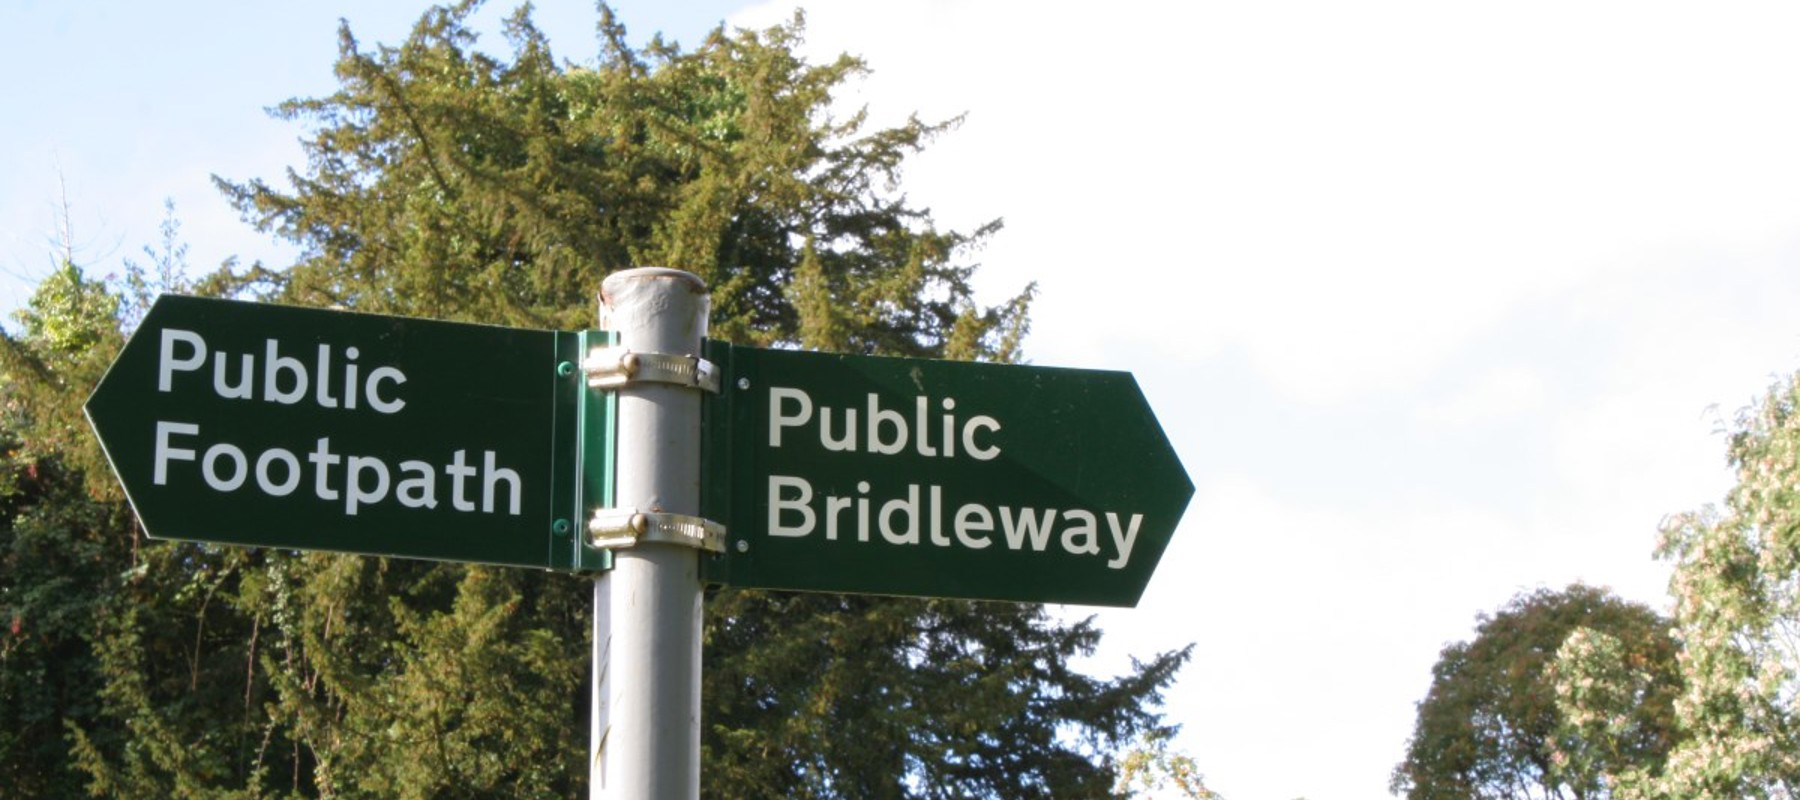 Public Footpath And Bridleway